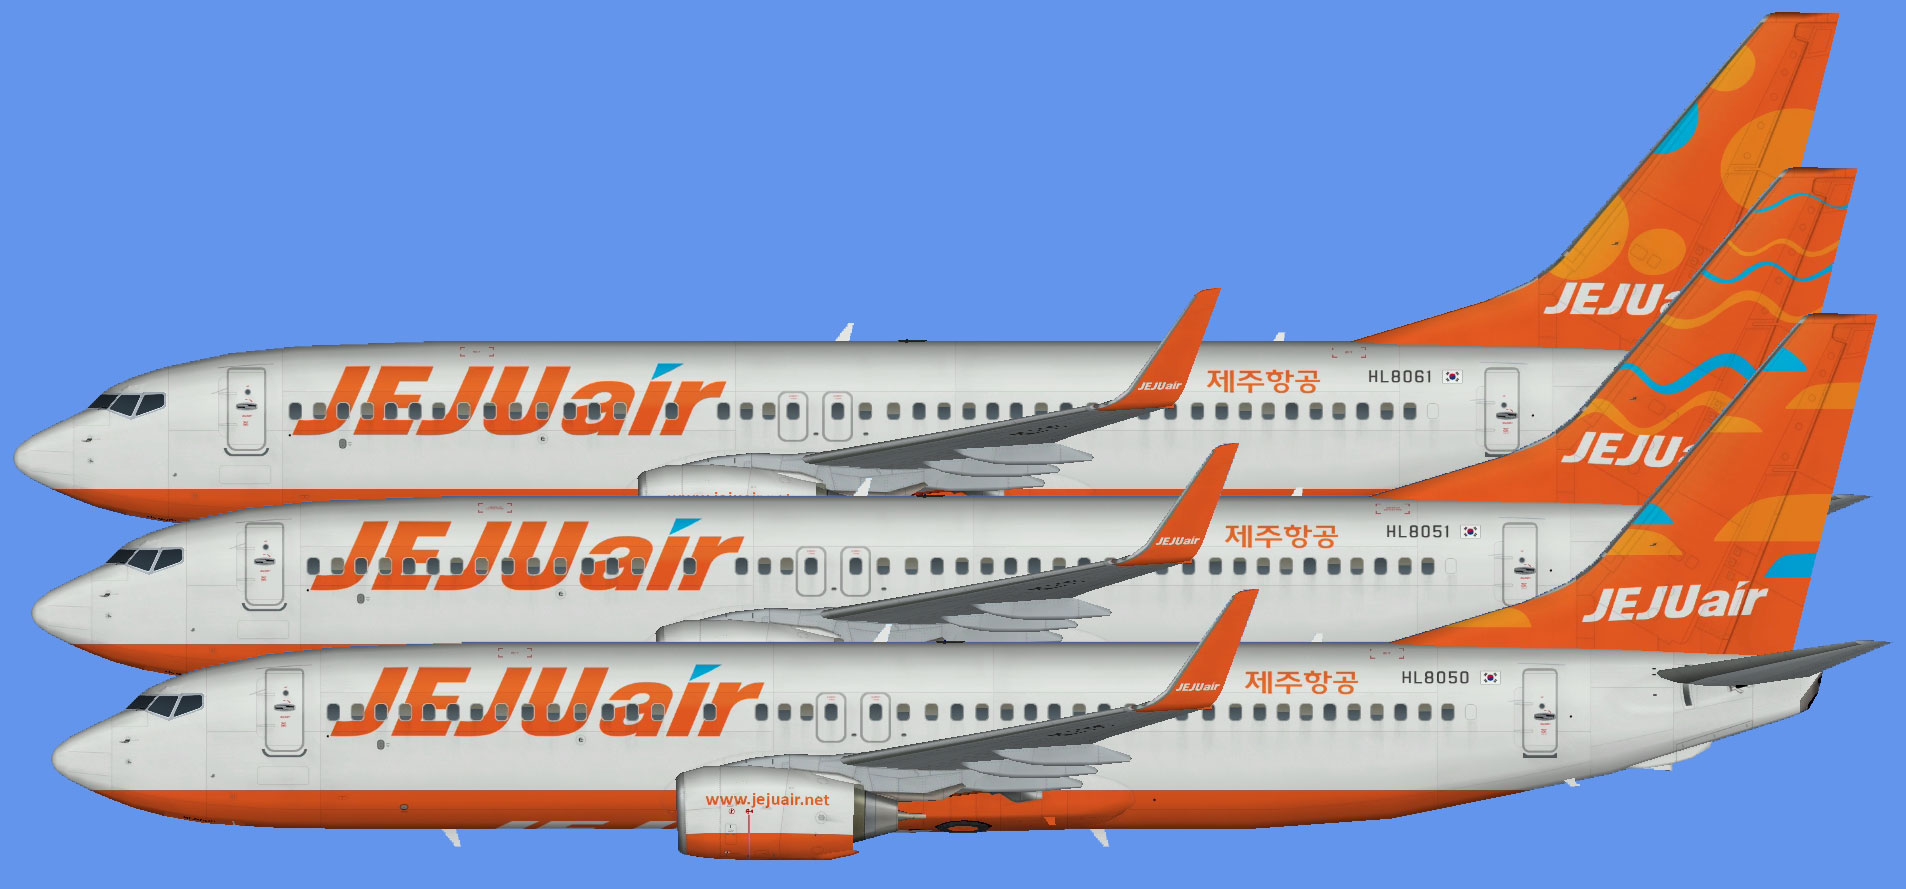 Jeju Air 737-800 (winglets)